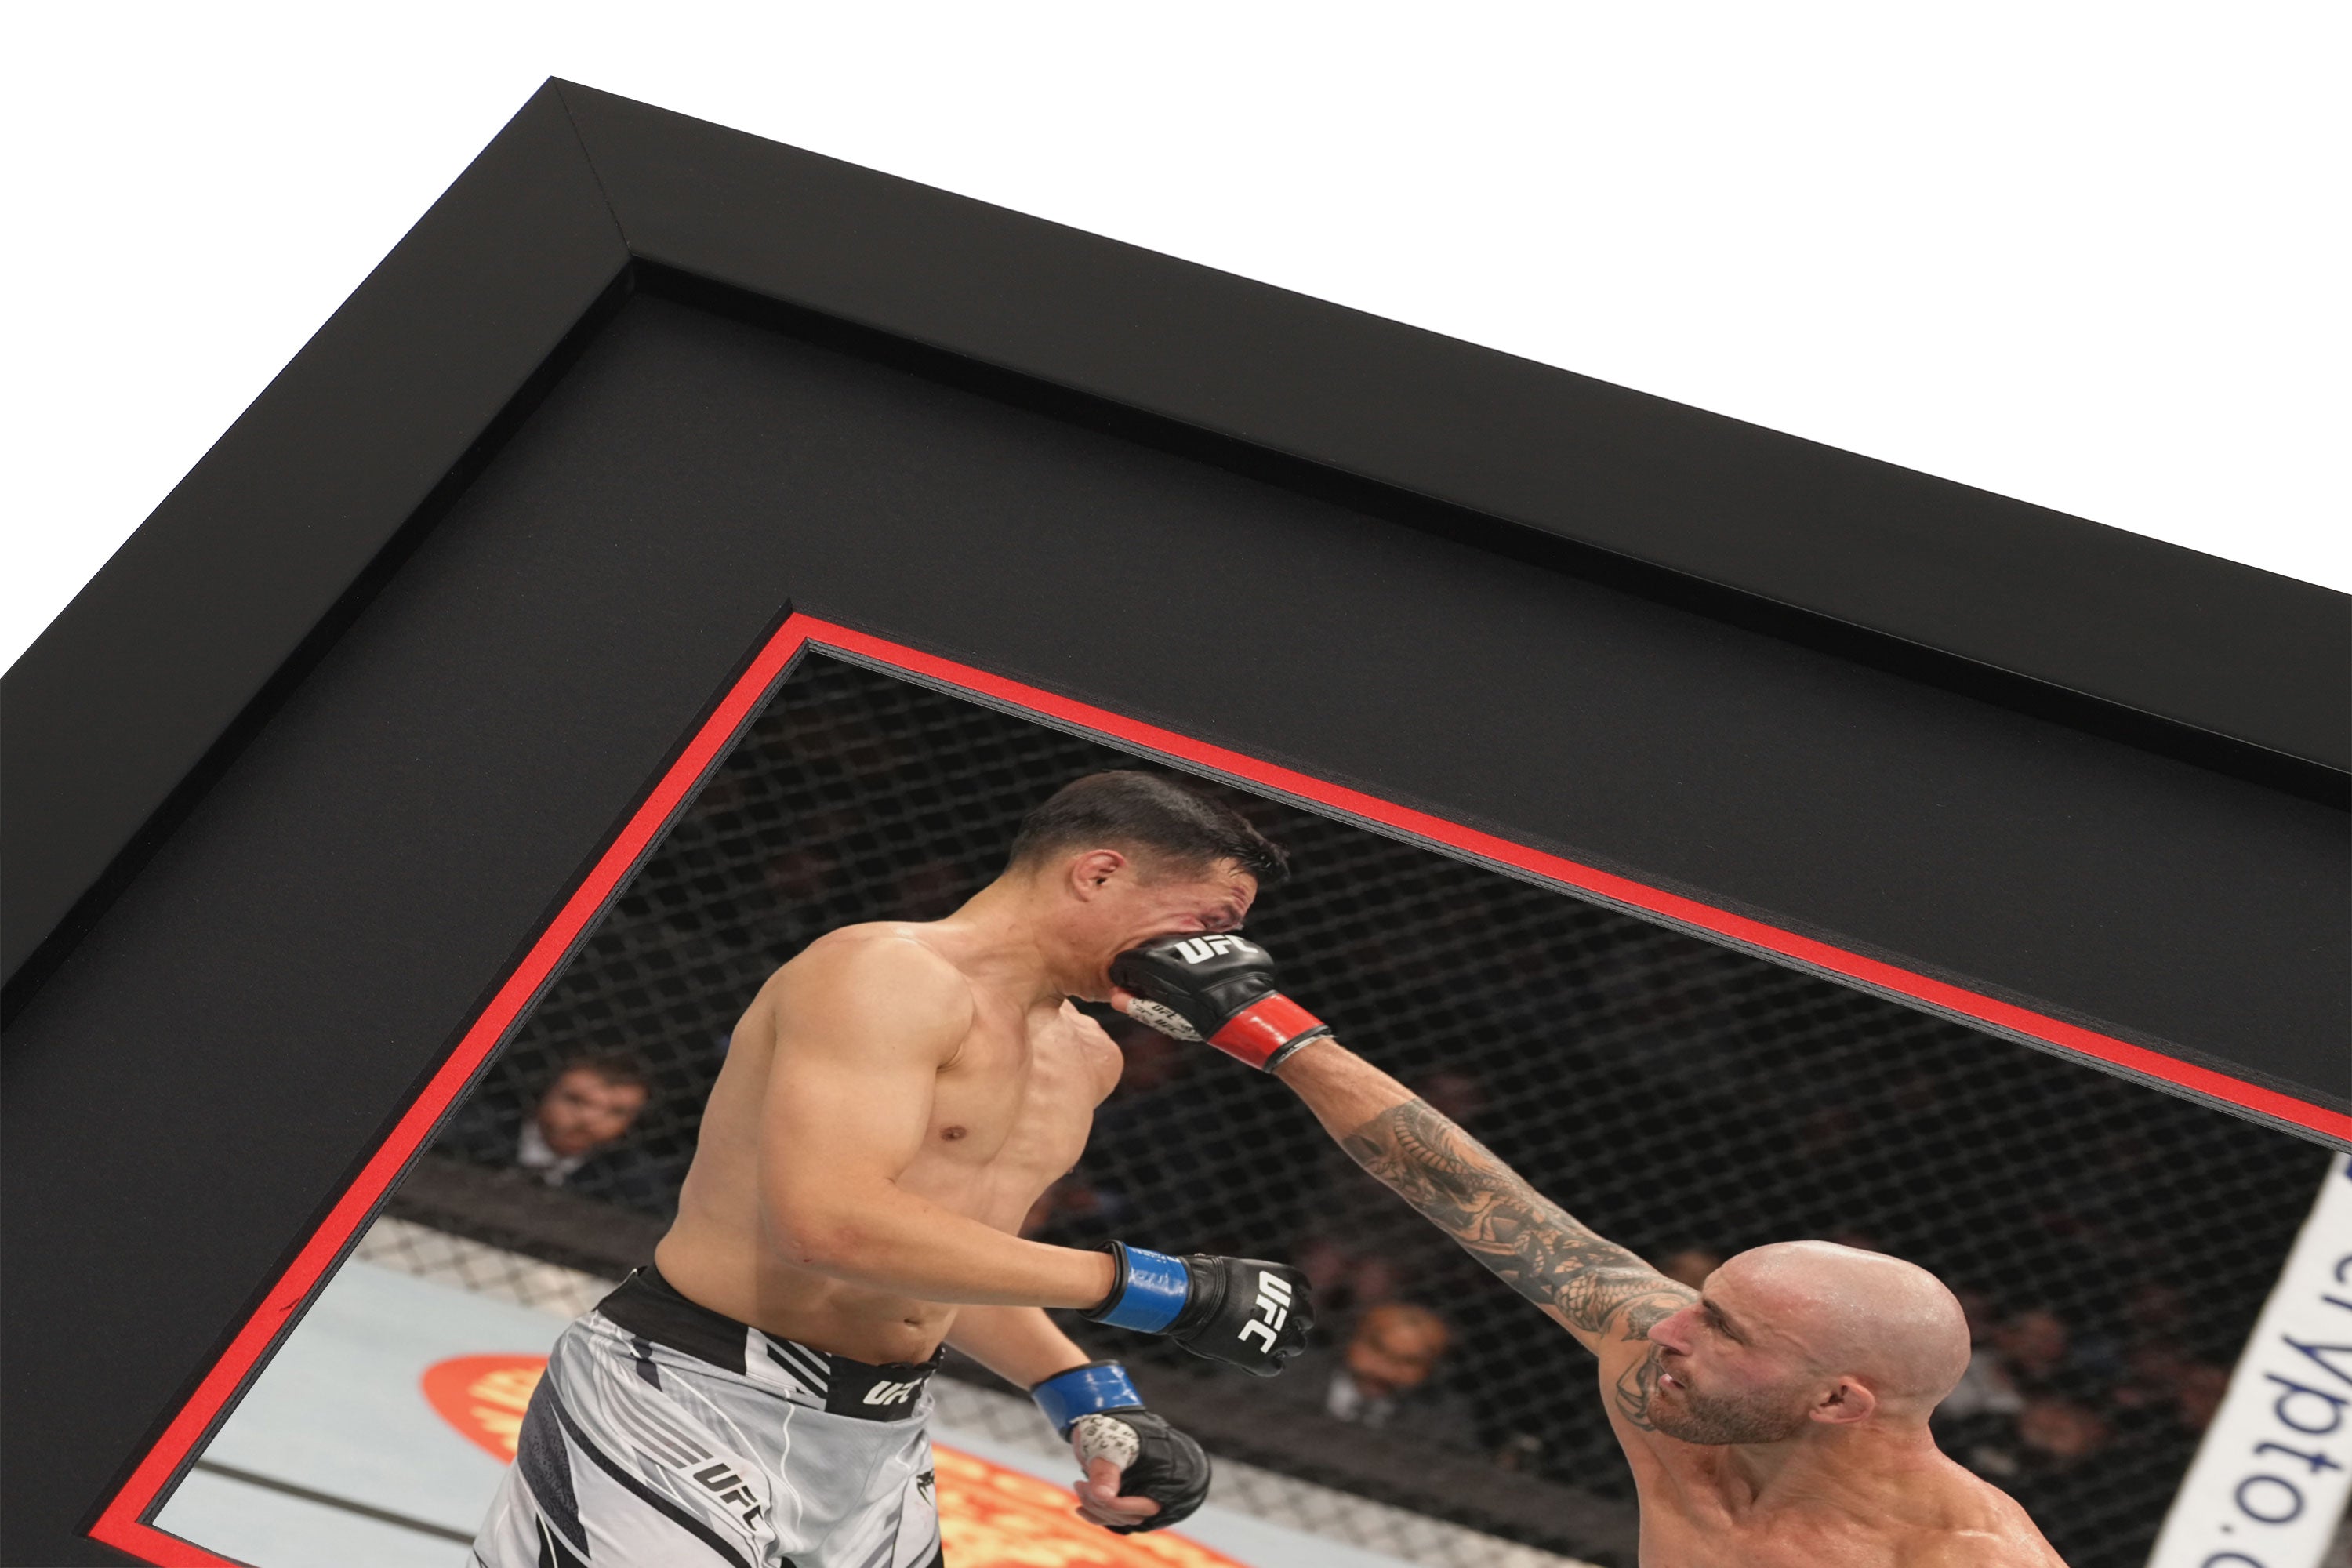 UFC 273: Volkanovski vs The Korean Zombie Canvas & Photo